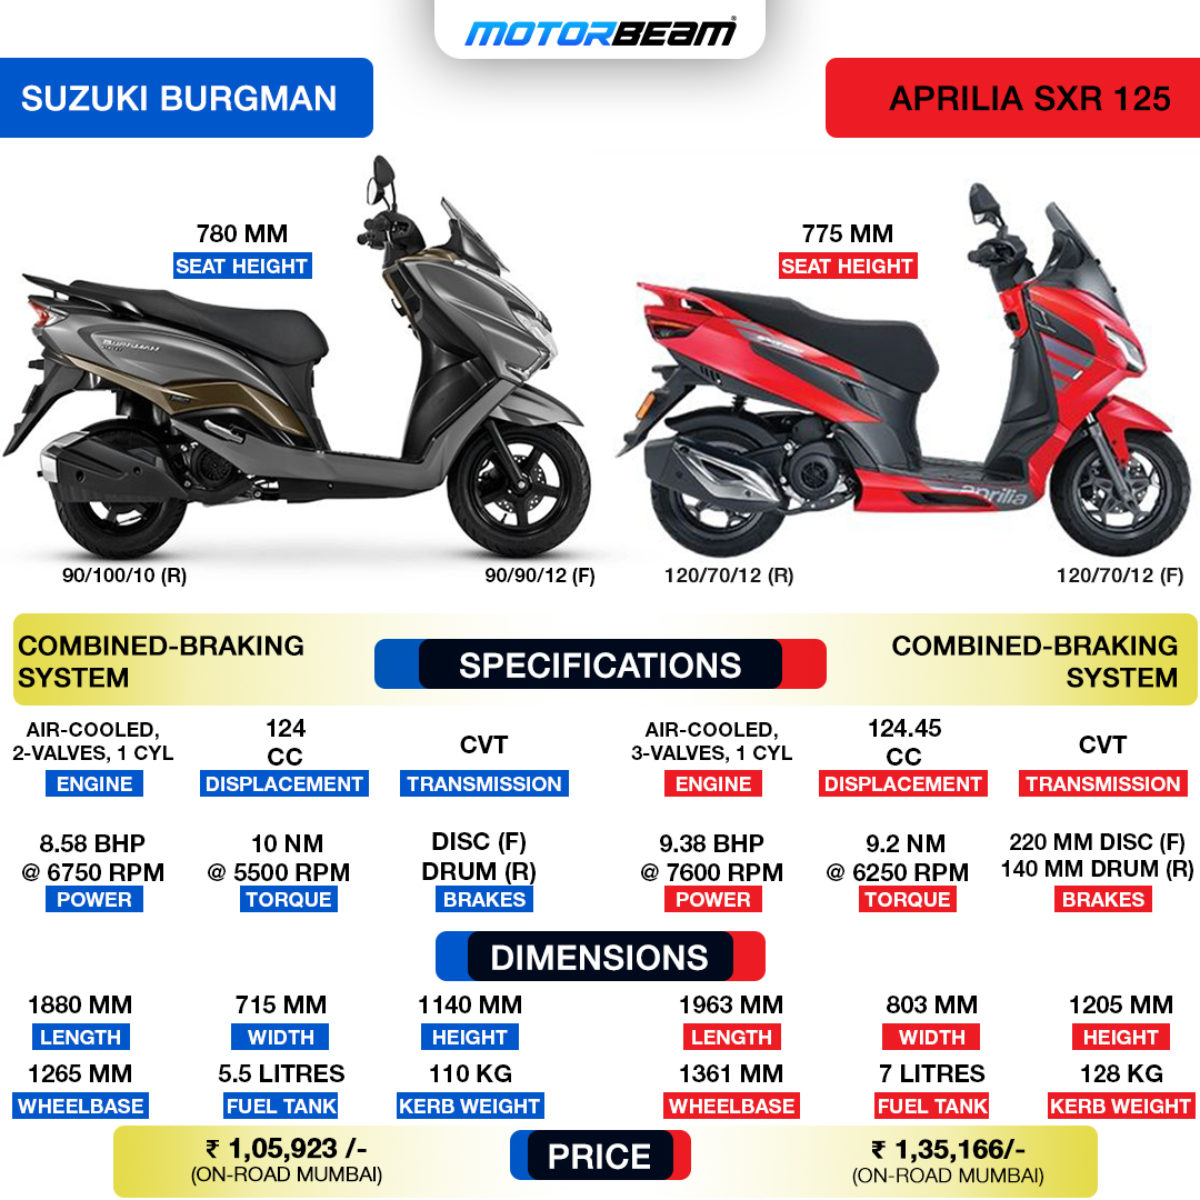 Suzuki Burgman vs Aprilia SXR 125 - Spec Comparison